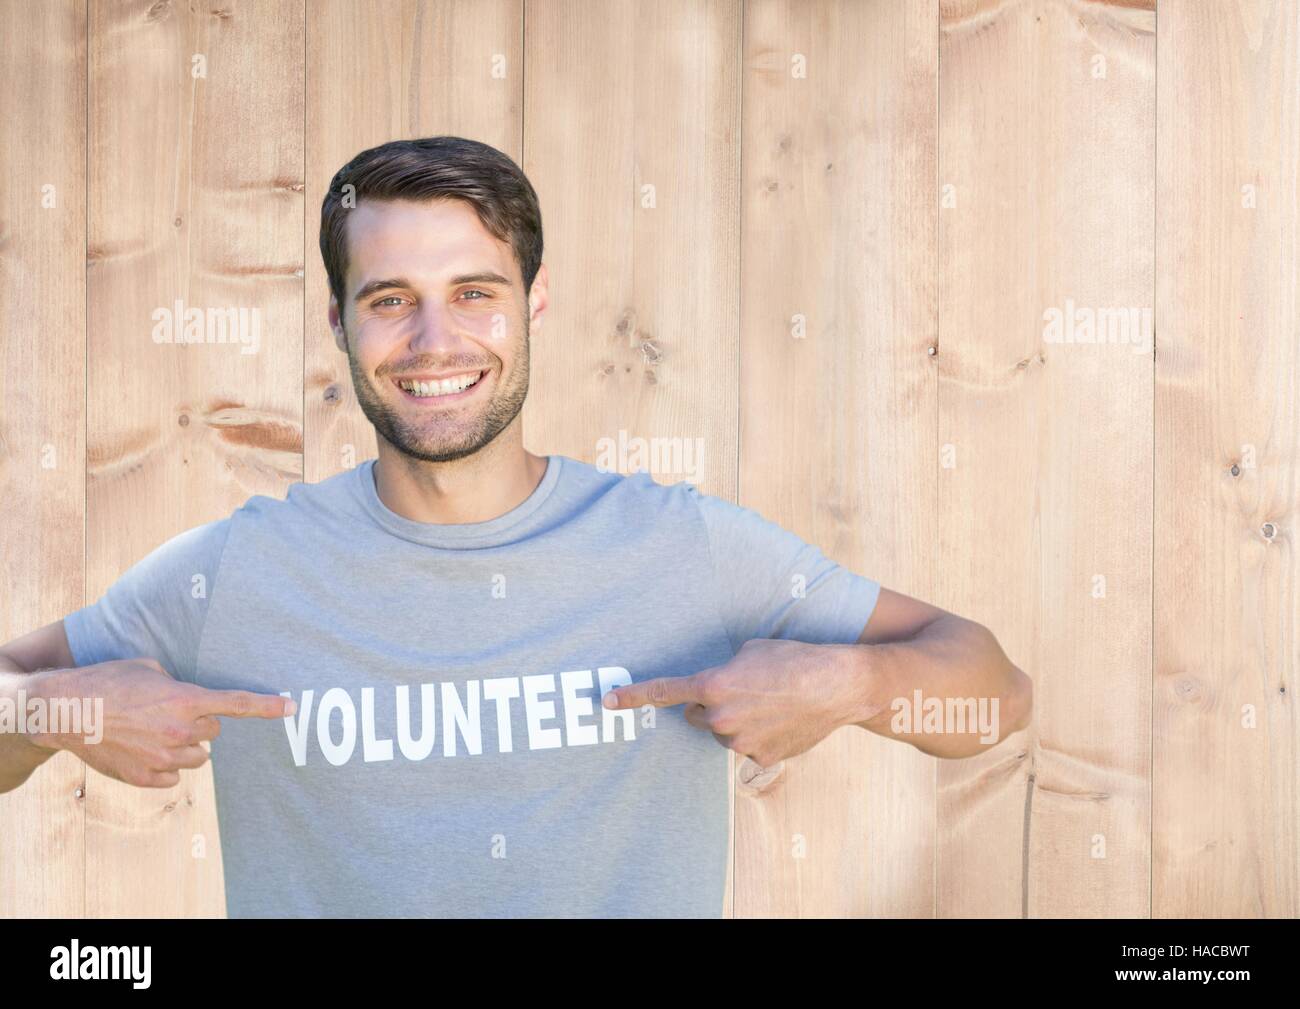 Lächelnder Mann zeigte auf freiwillige Titel auf seinem t-Shirt Stockfoto